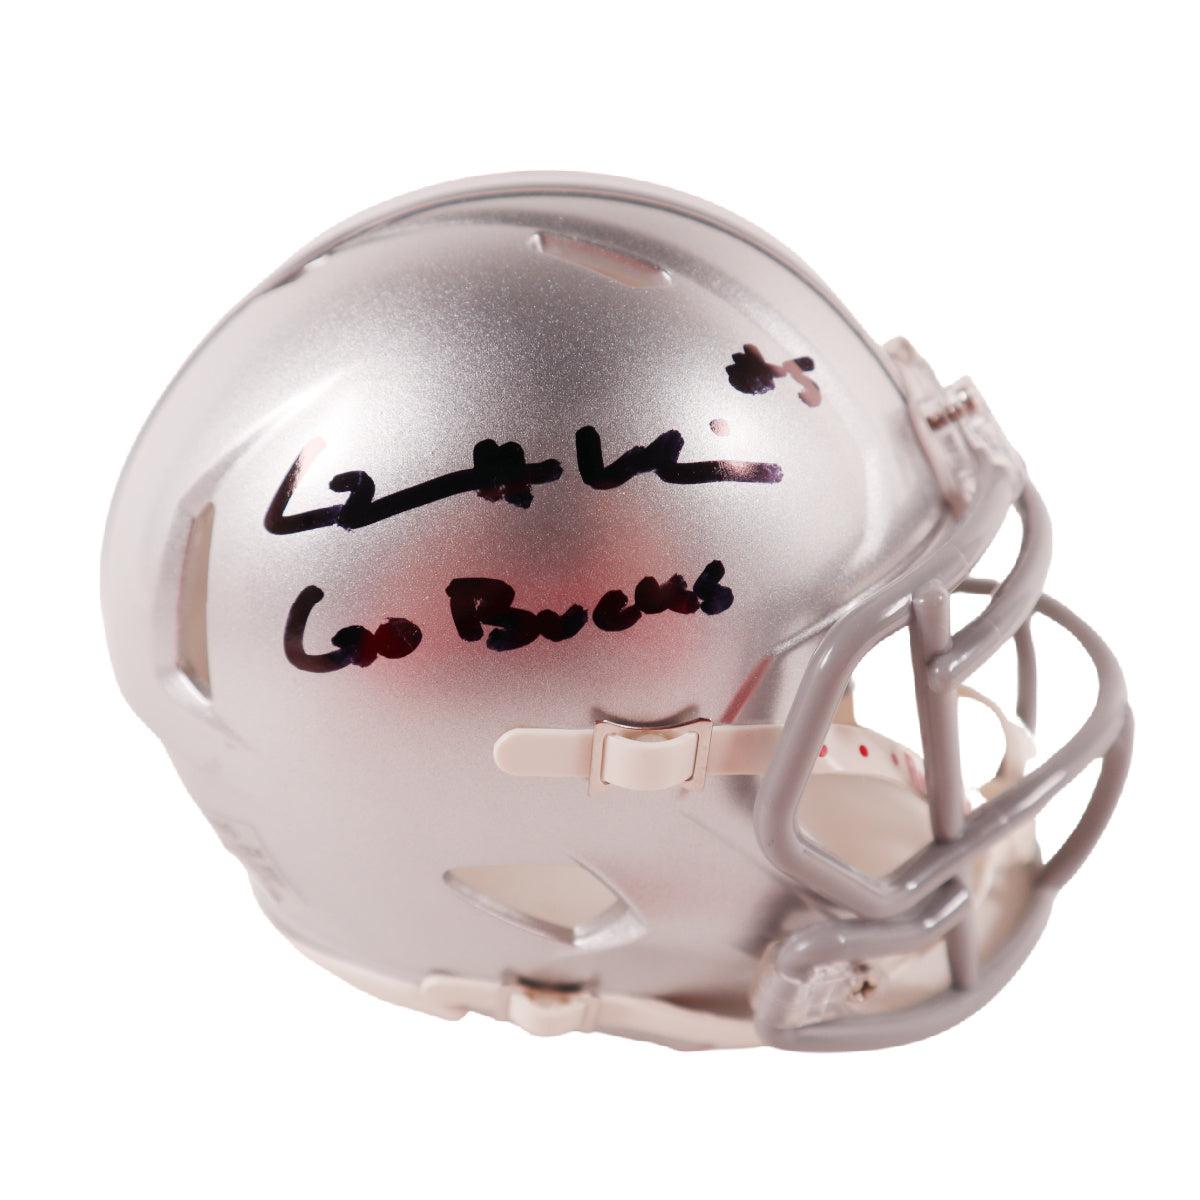 GARRETT WILSON Signed Mini Helmet Ohio State Buckeyes Autographed JSA COA